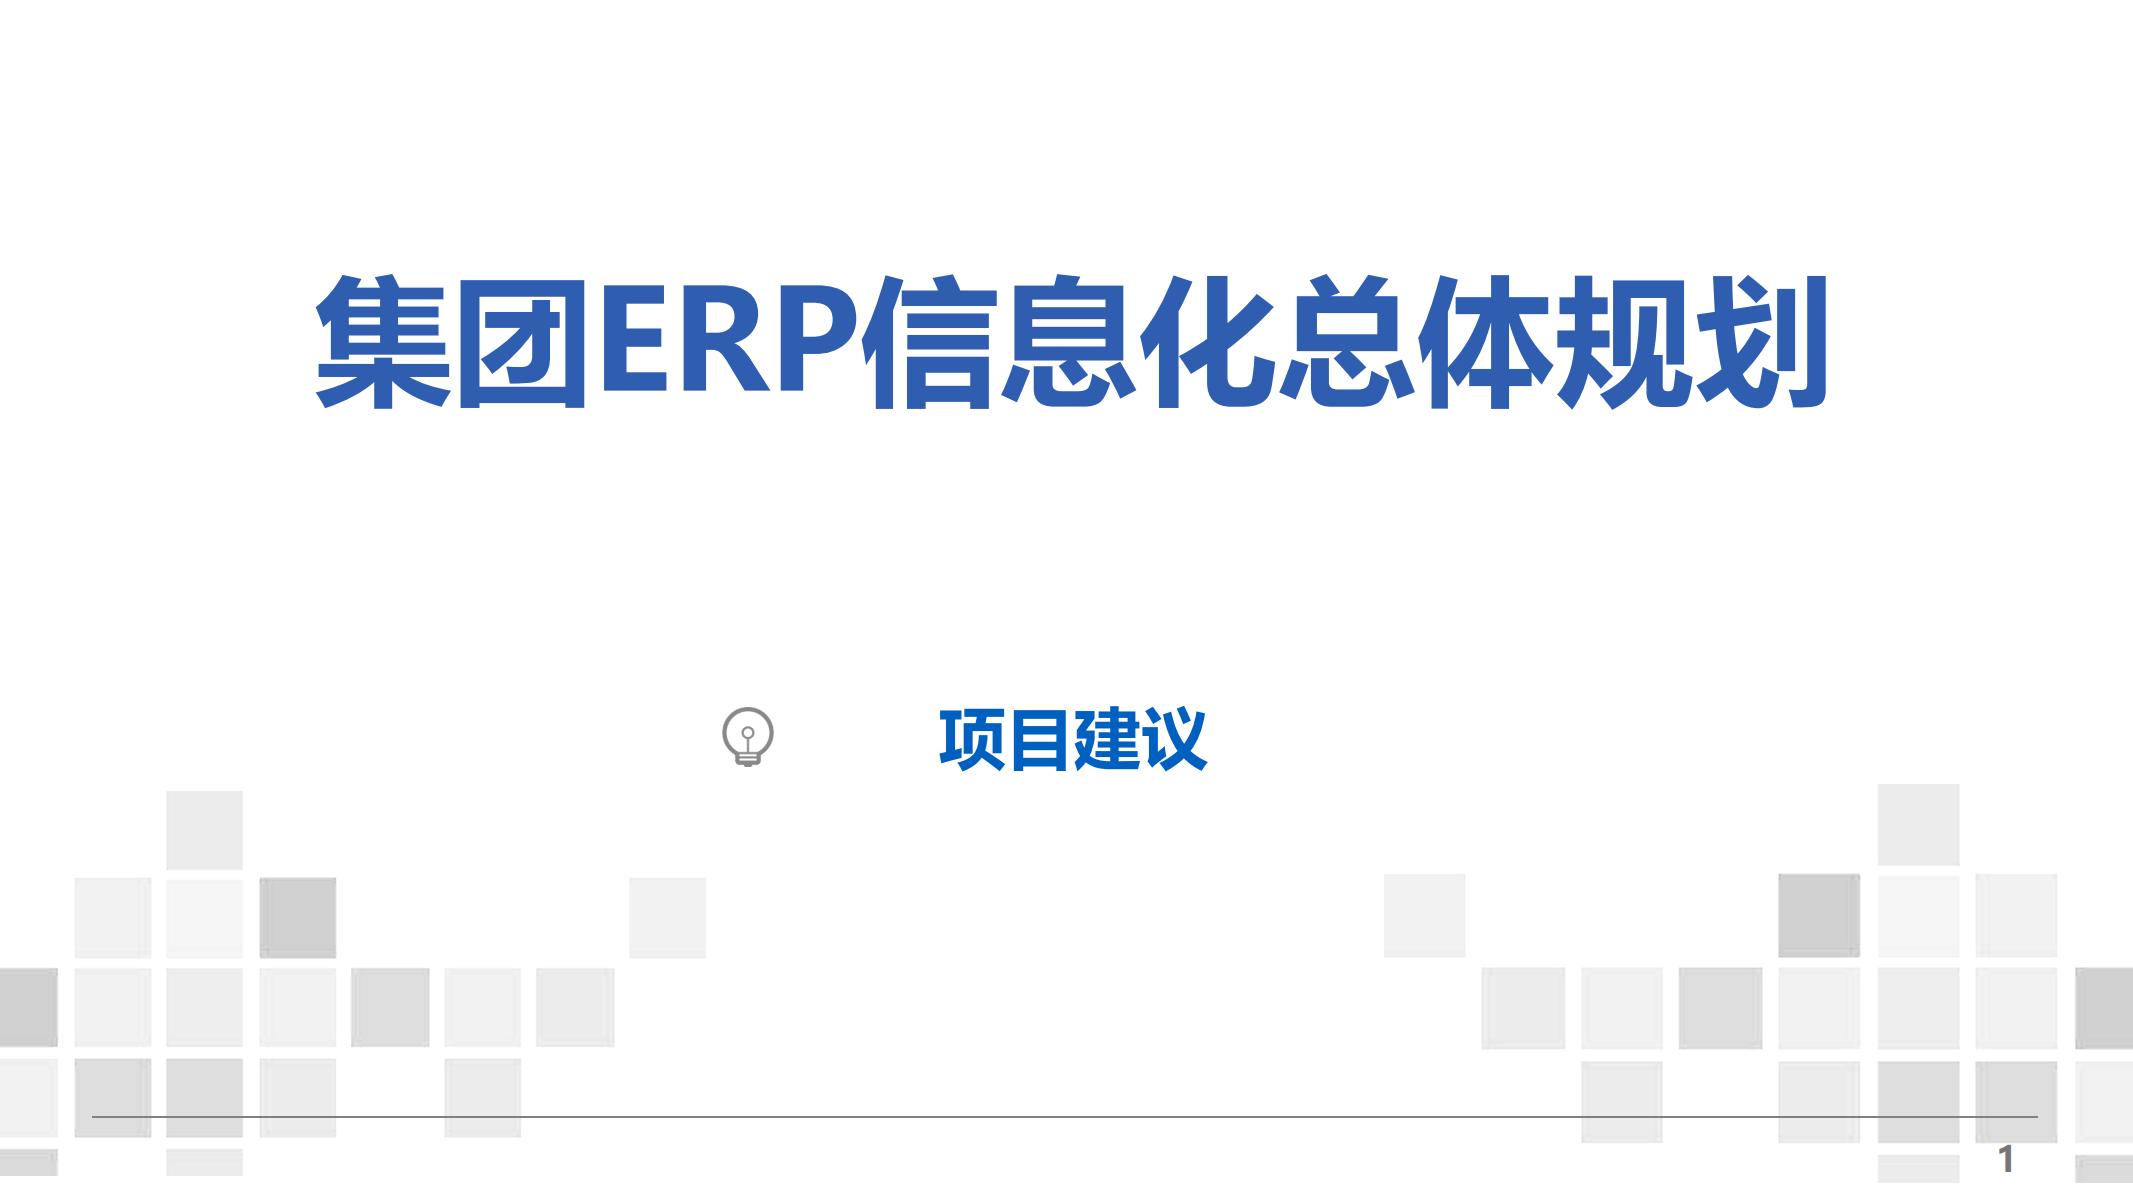 集团ERP信息化总体规划